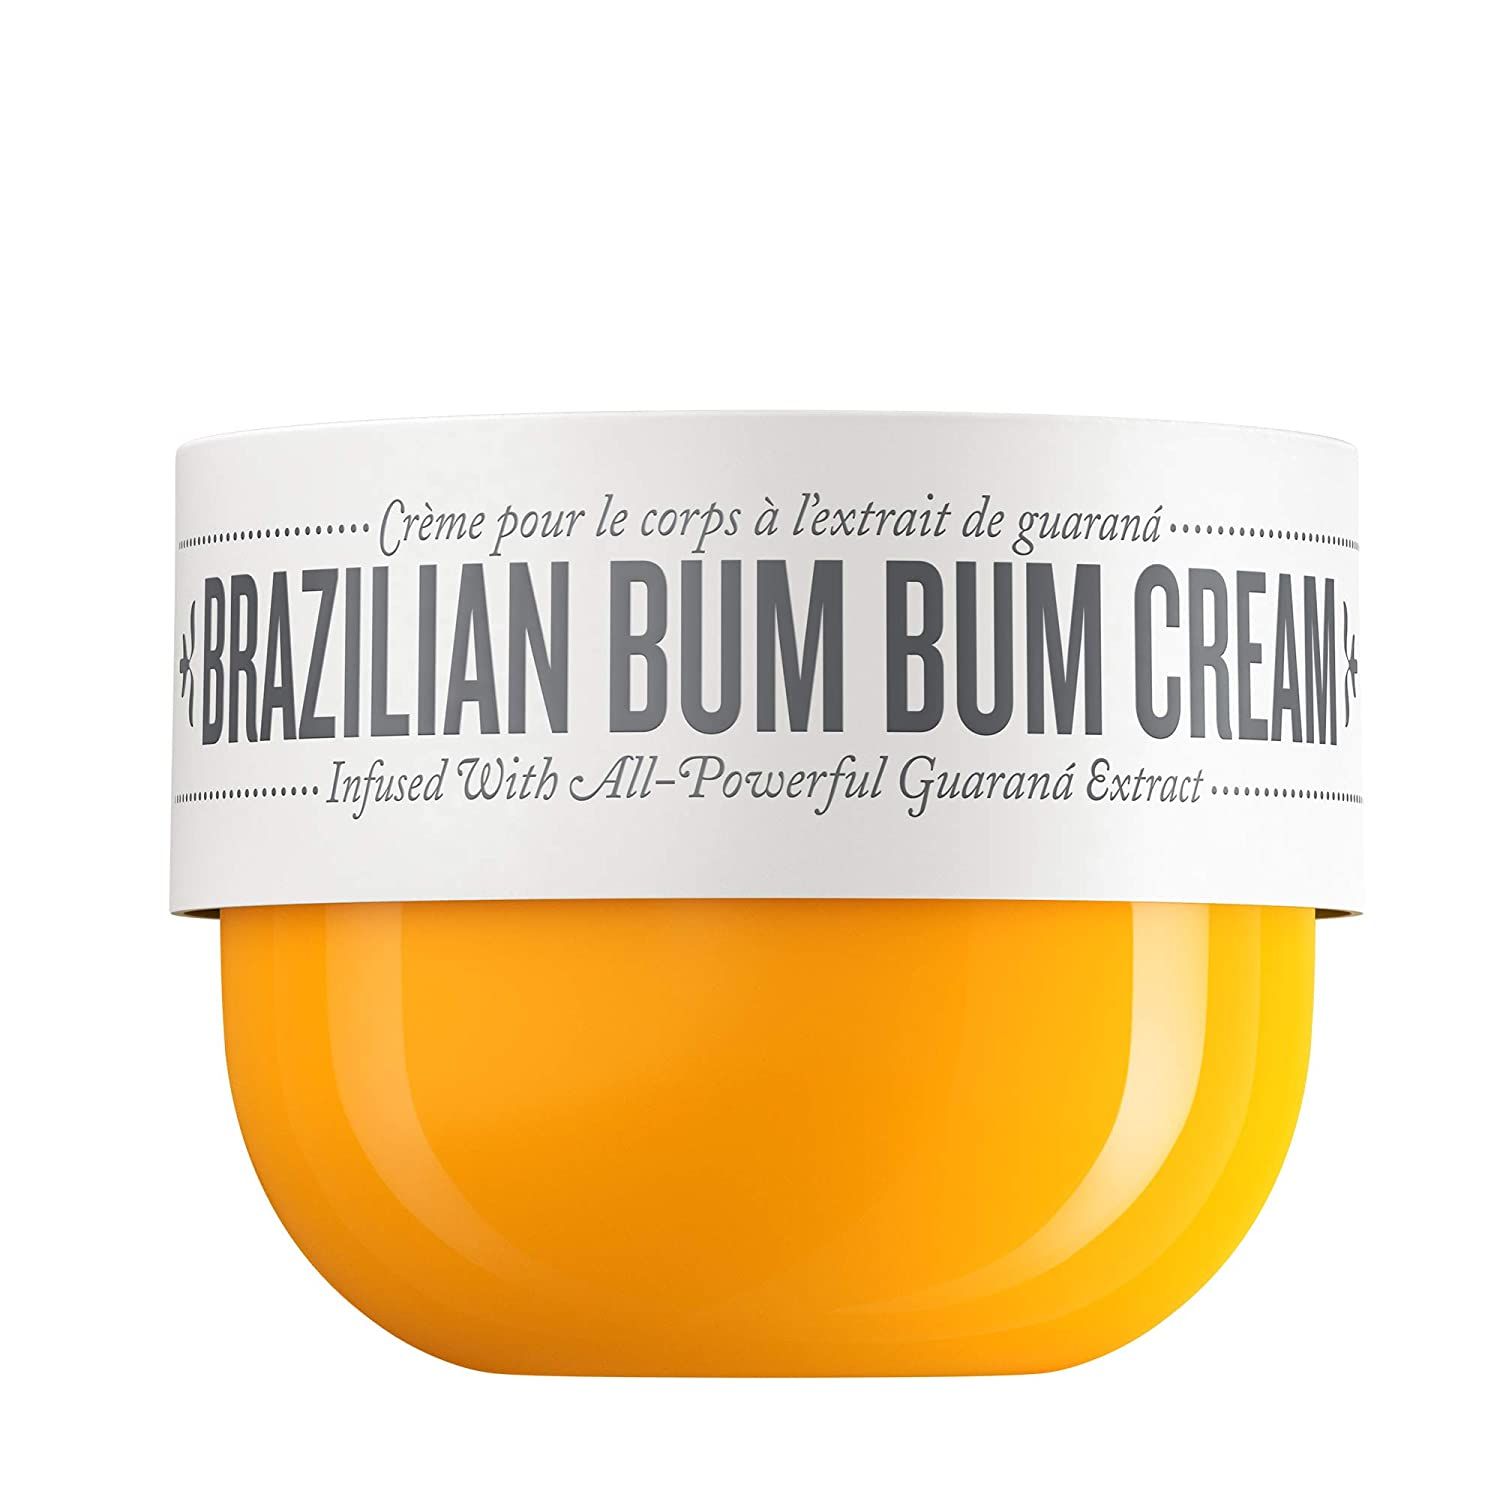 Sol de Janiero Brazilian Bum Bum Cream